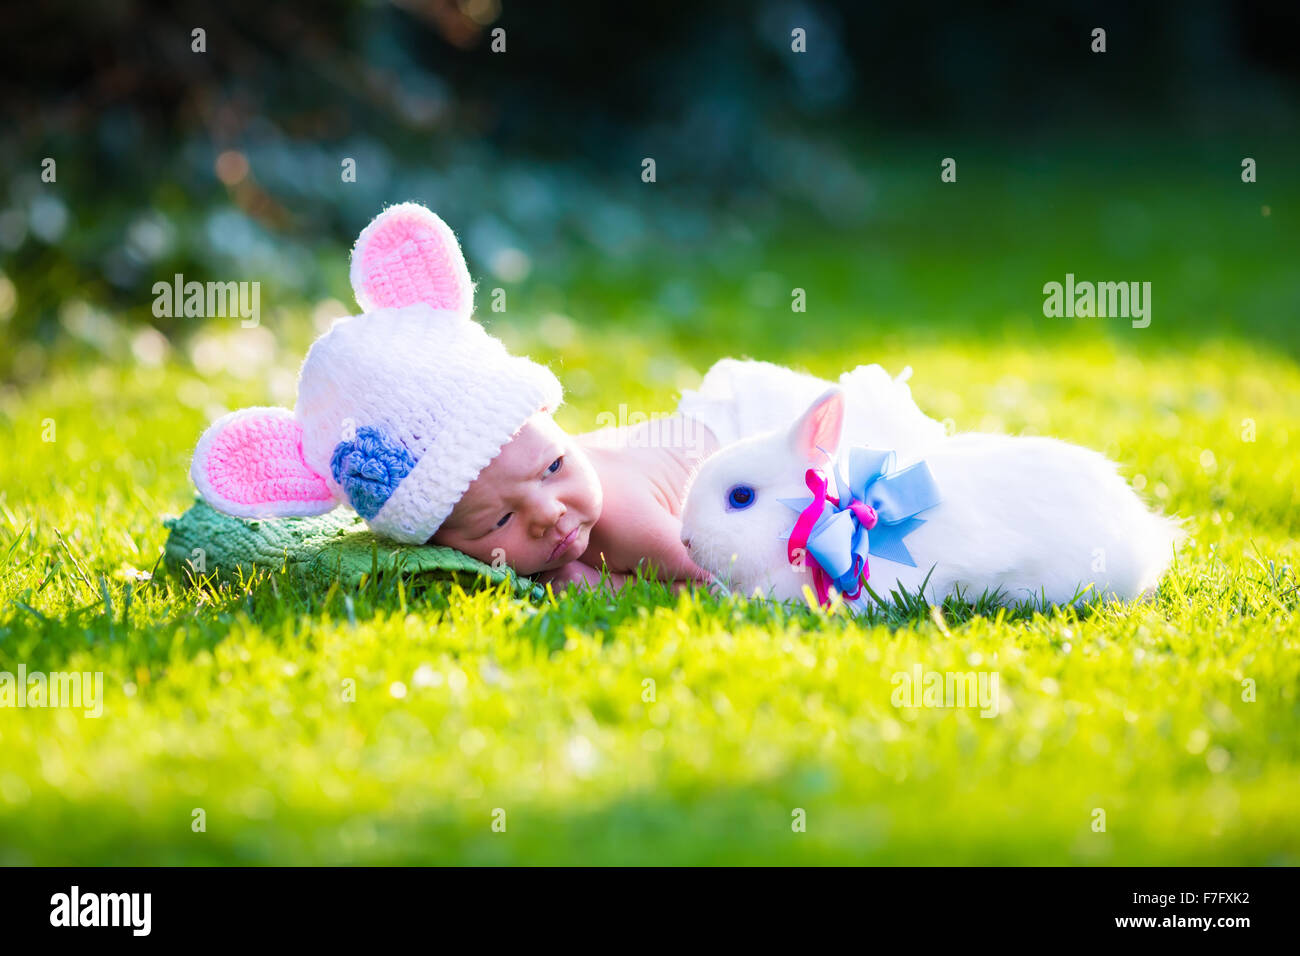 Lindo bebé recién nacido niño en traje de conejito sombrero con orejas y pañales blancos y un conejo real en jardín durante la Pascua Fotografía de - Alamy